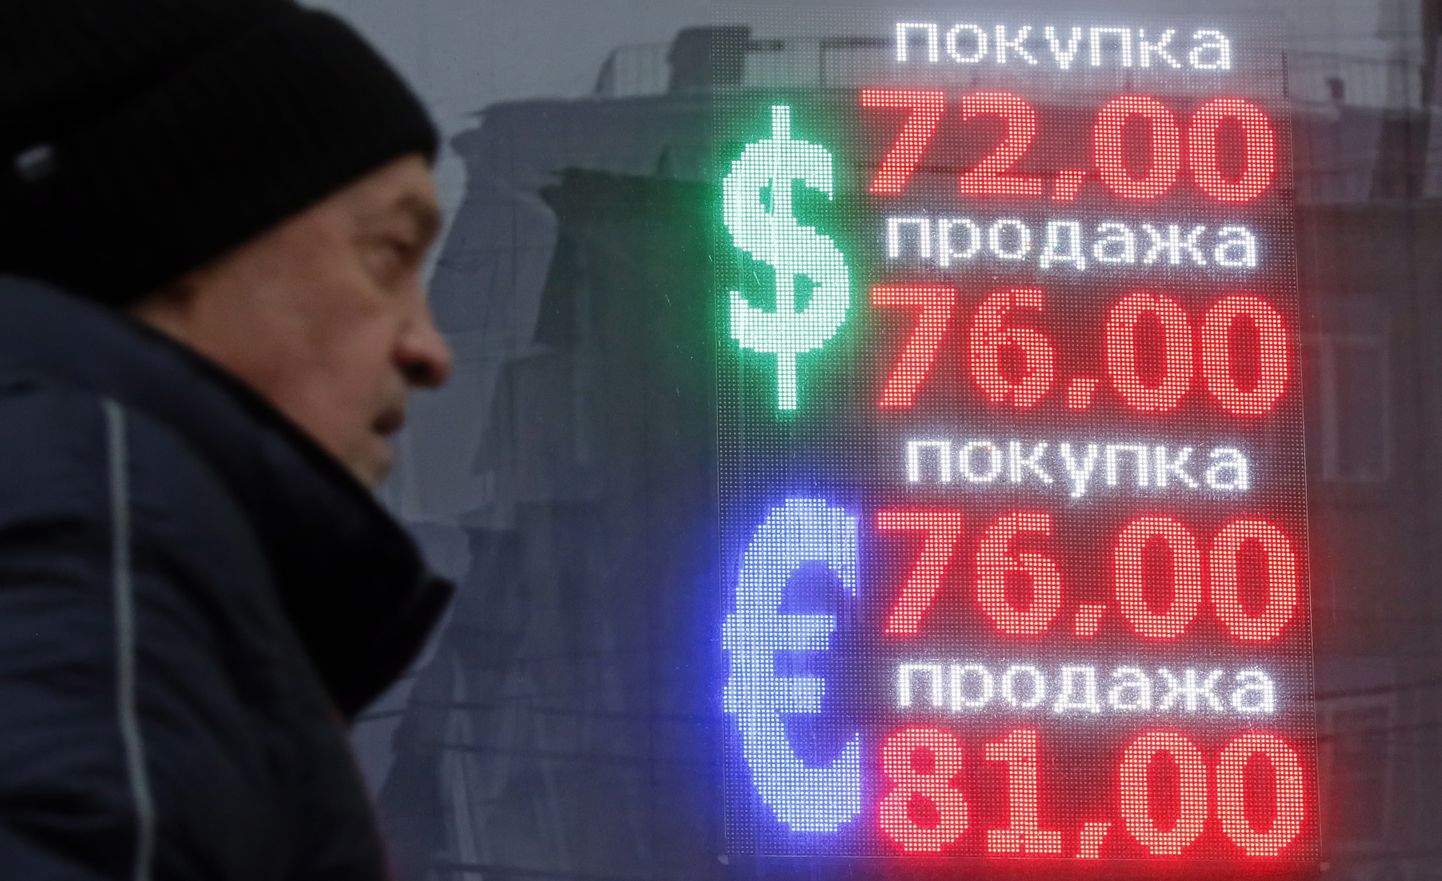 Vene rubla on detsembris, pärast nafta hinnalae jõustumist nii euro kui dollari suhtes märkimisväärselt odavnenud.